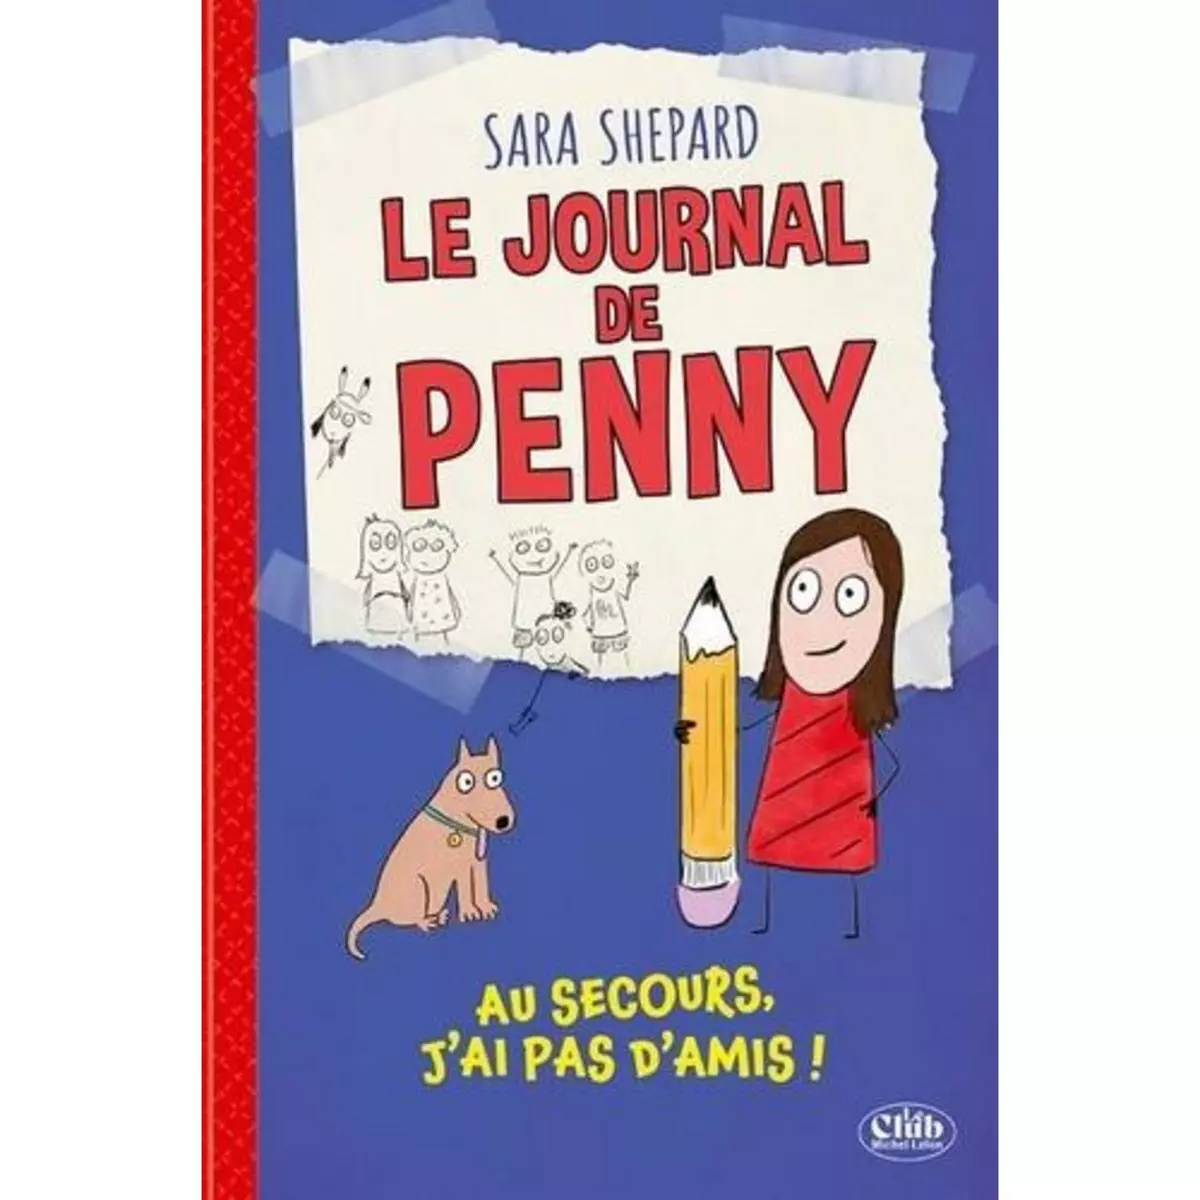  LE JOURNAL DE PENNY TOME 1 : AU SECOURS, J'AI PAS D'AMIS !, Shepard Sara